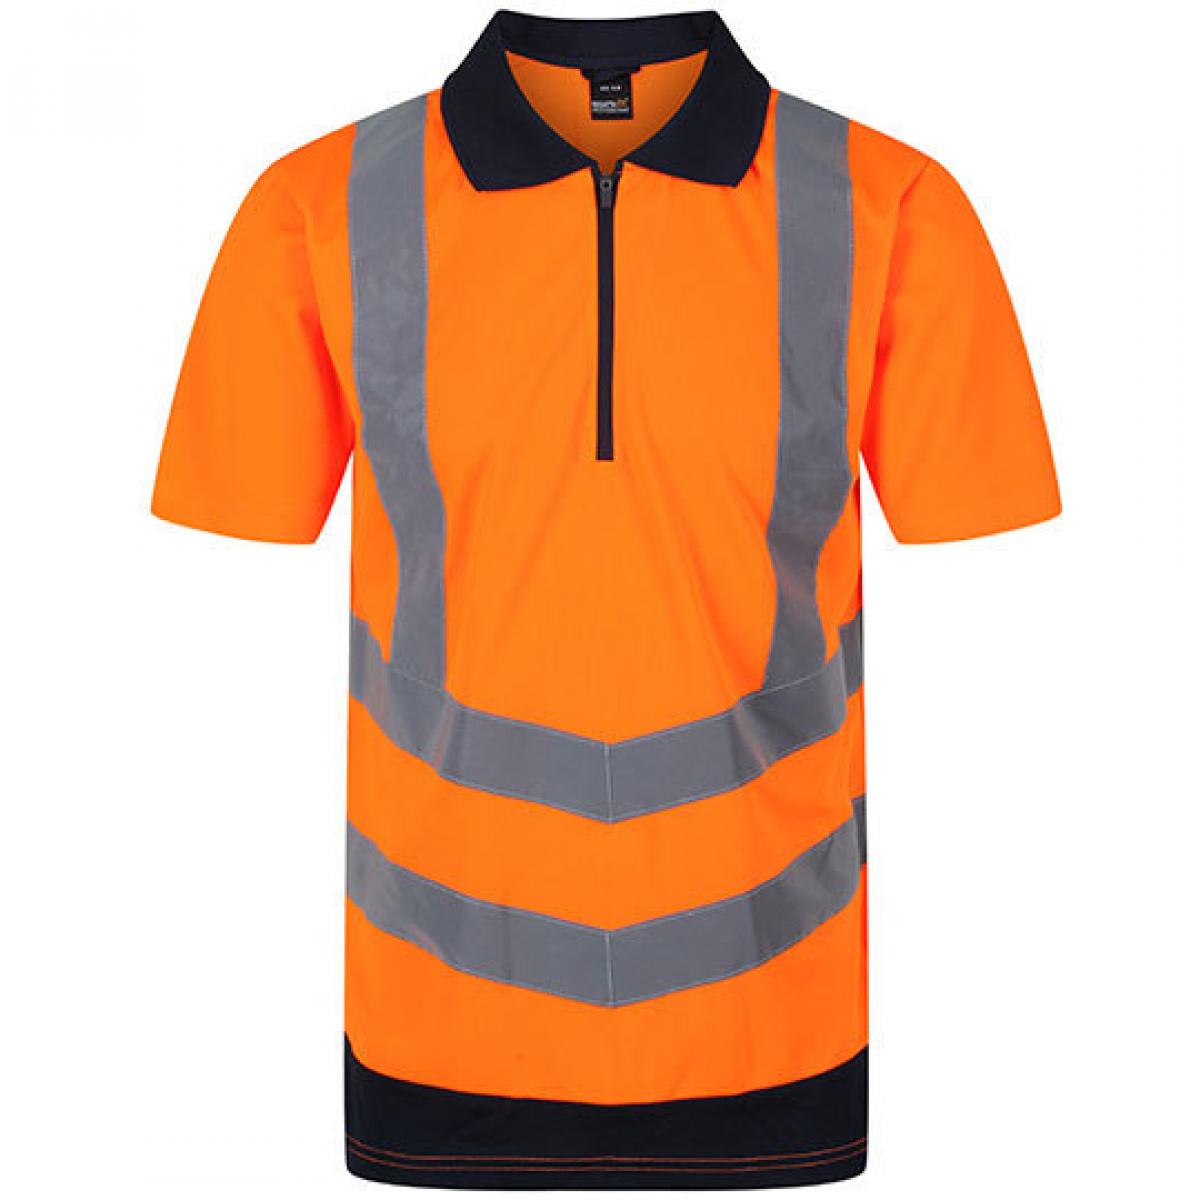 Hersteller: Regatta Herstellernummer: TRS189 Artikelbezeichnung: Herren Hi-Vis Pro Poloshirt, EN20471 Klasse 2 Farbe: Orange/Navy